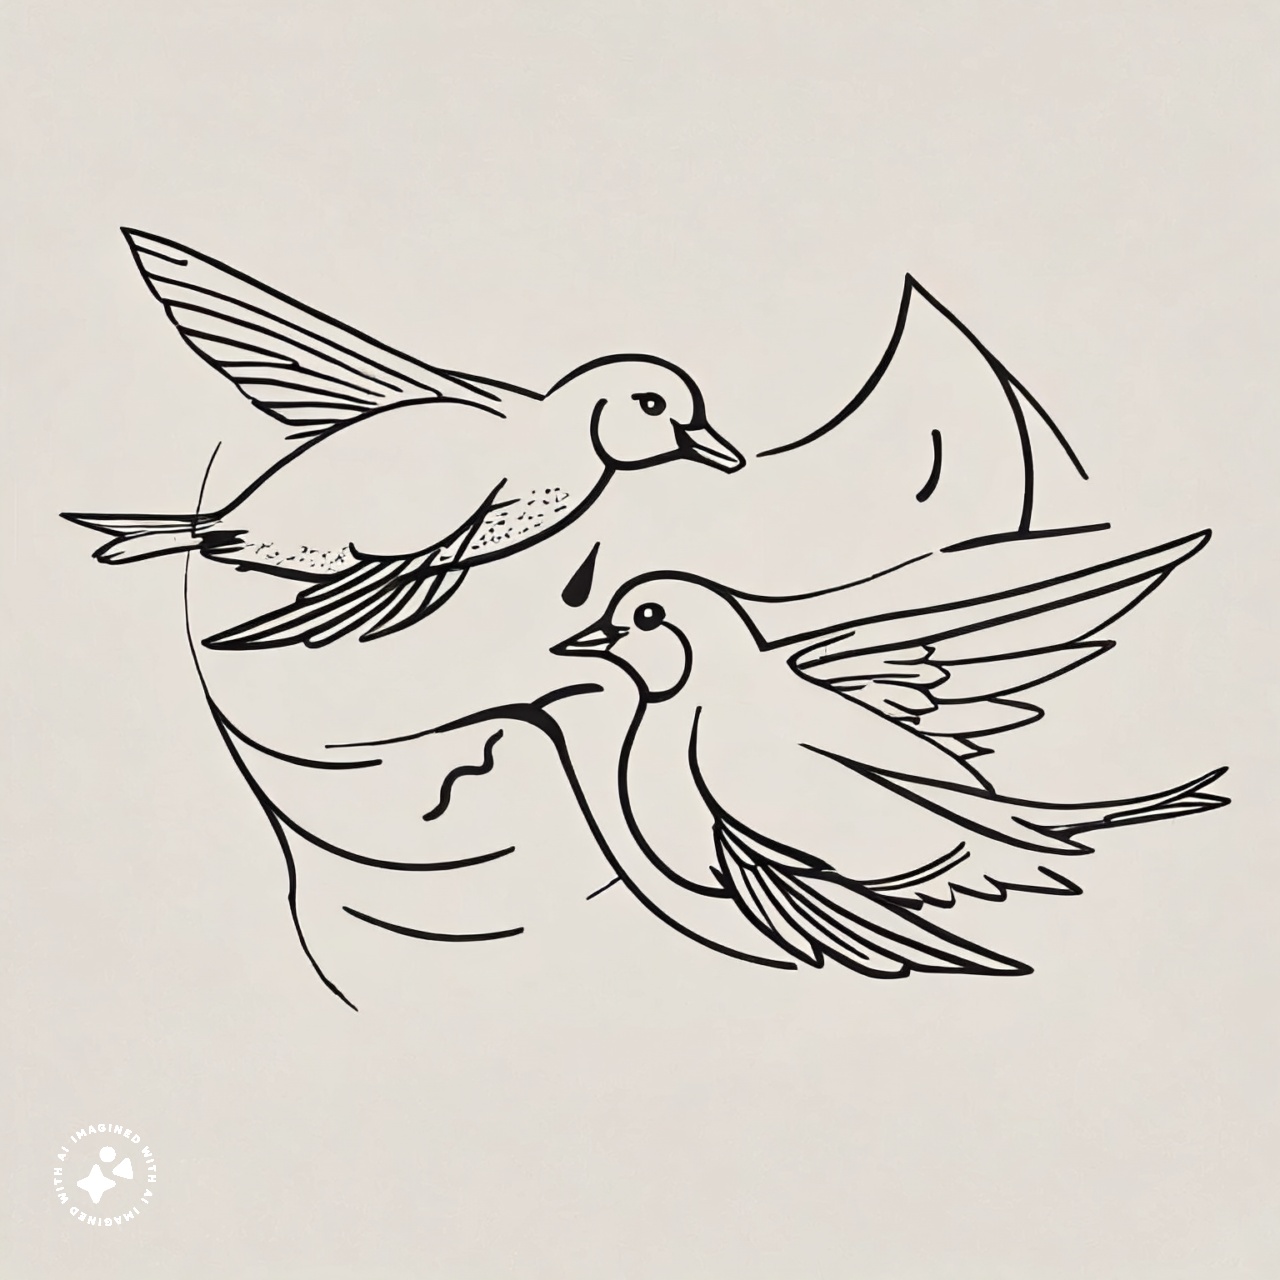 Swim-two-birds logo ideas